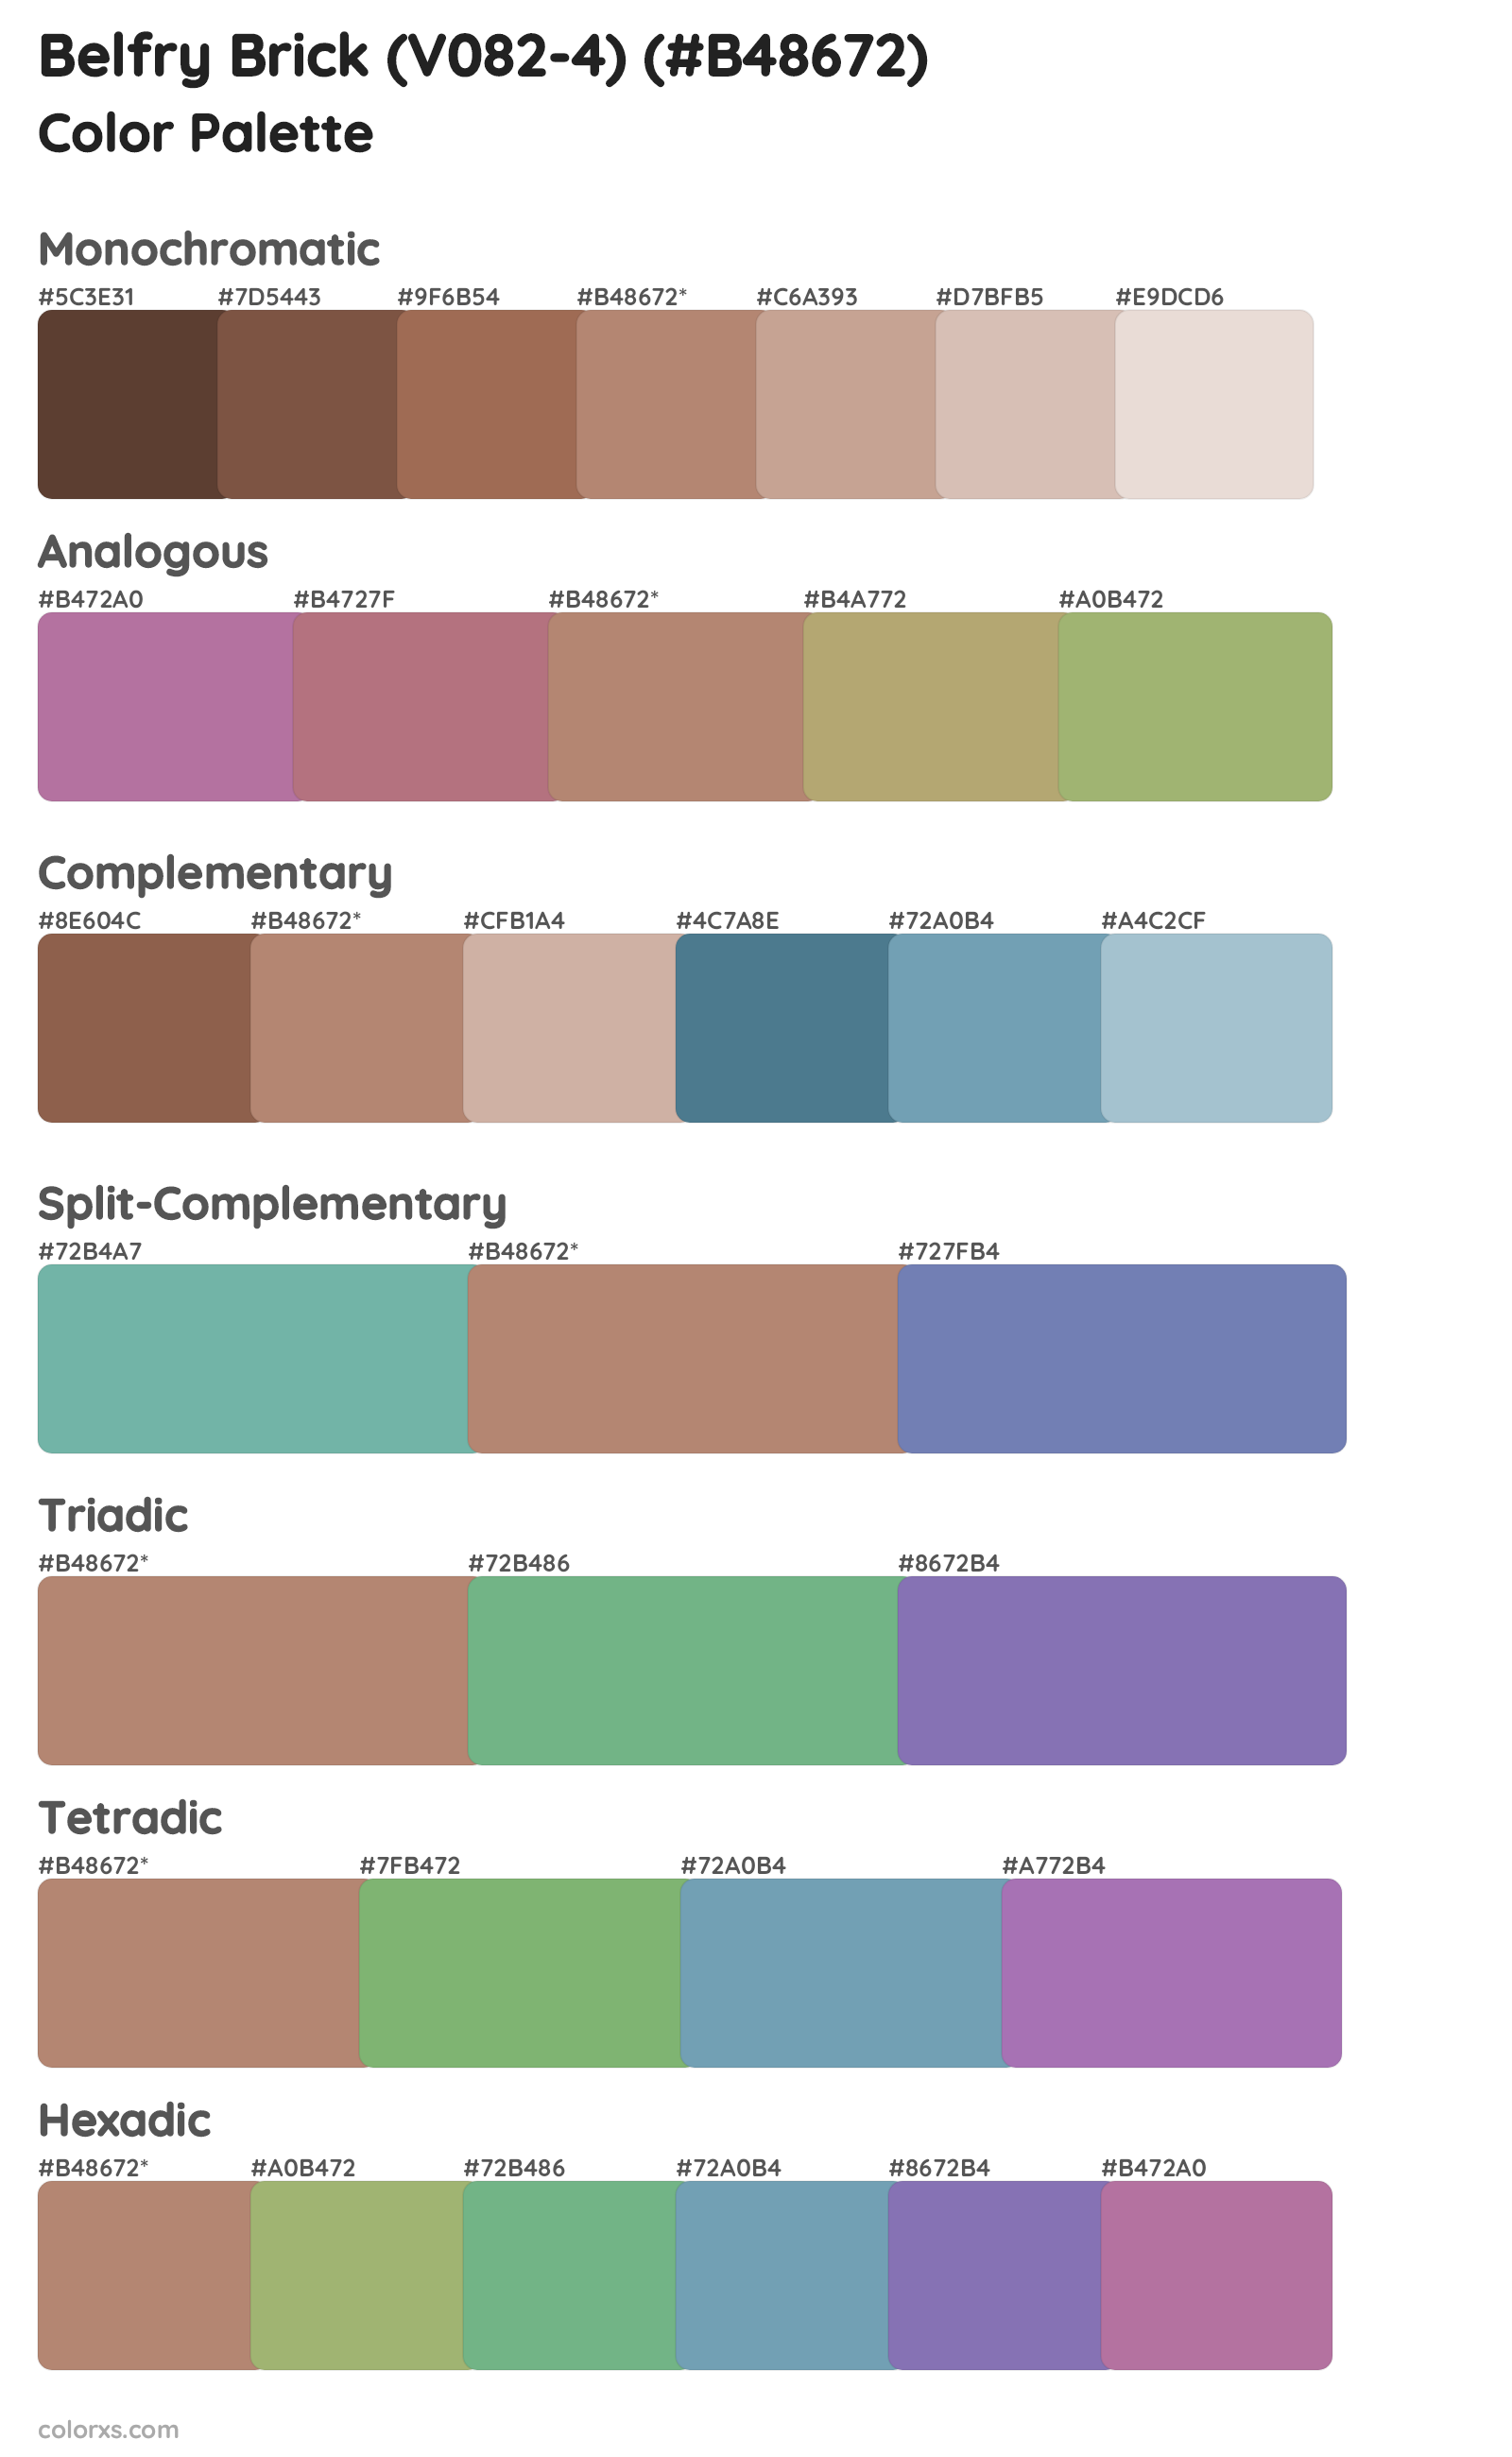 Belfry Brick (V082-4) Color Scheme Palettes